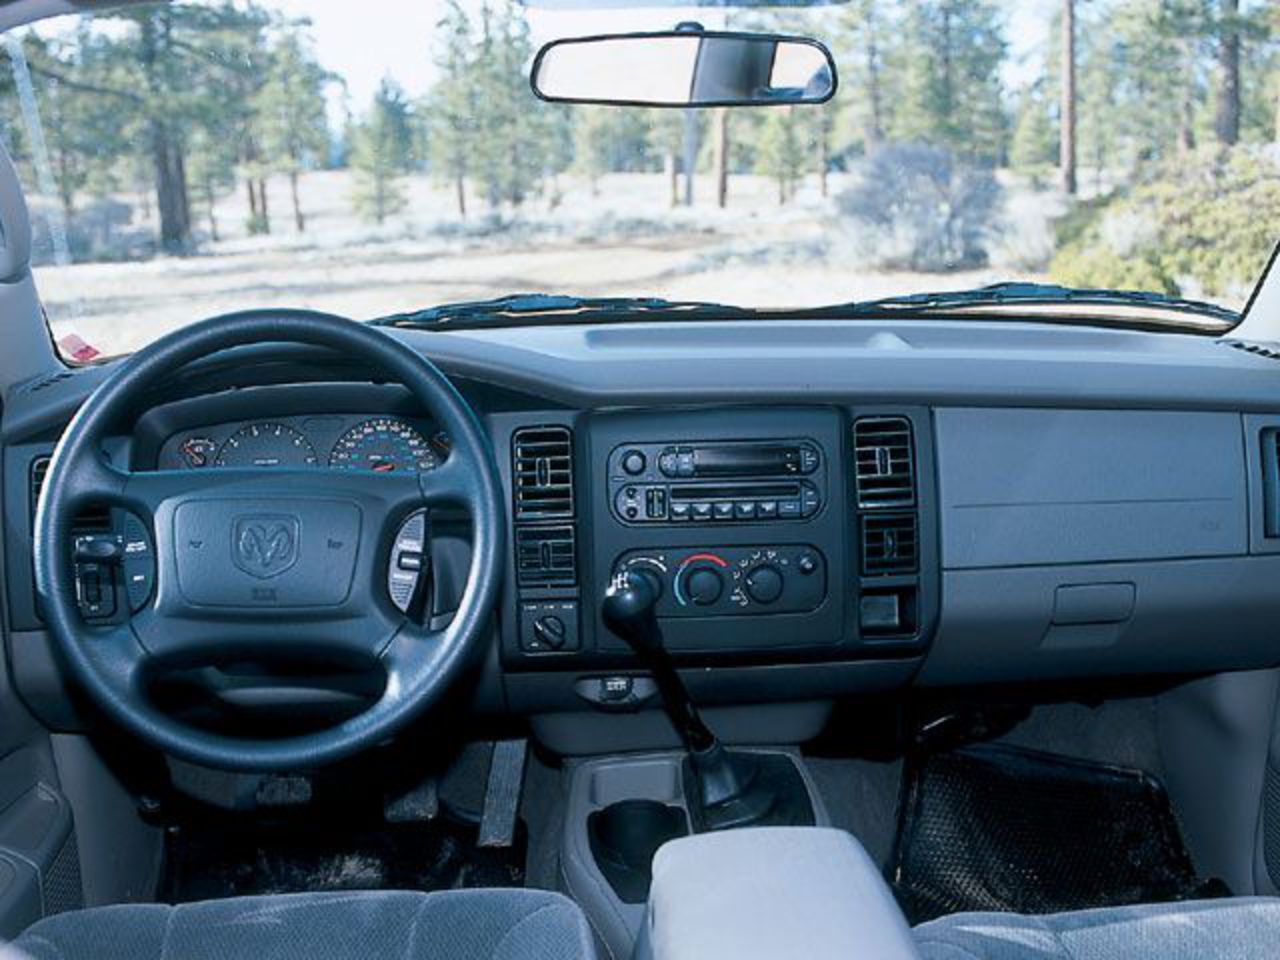 2002 Dodge Dakota Quad Cab Interior